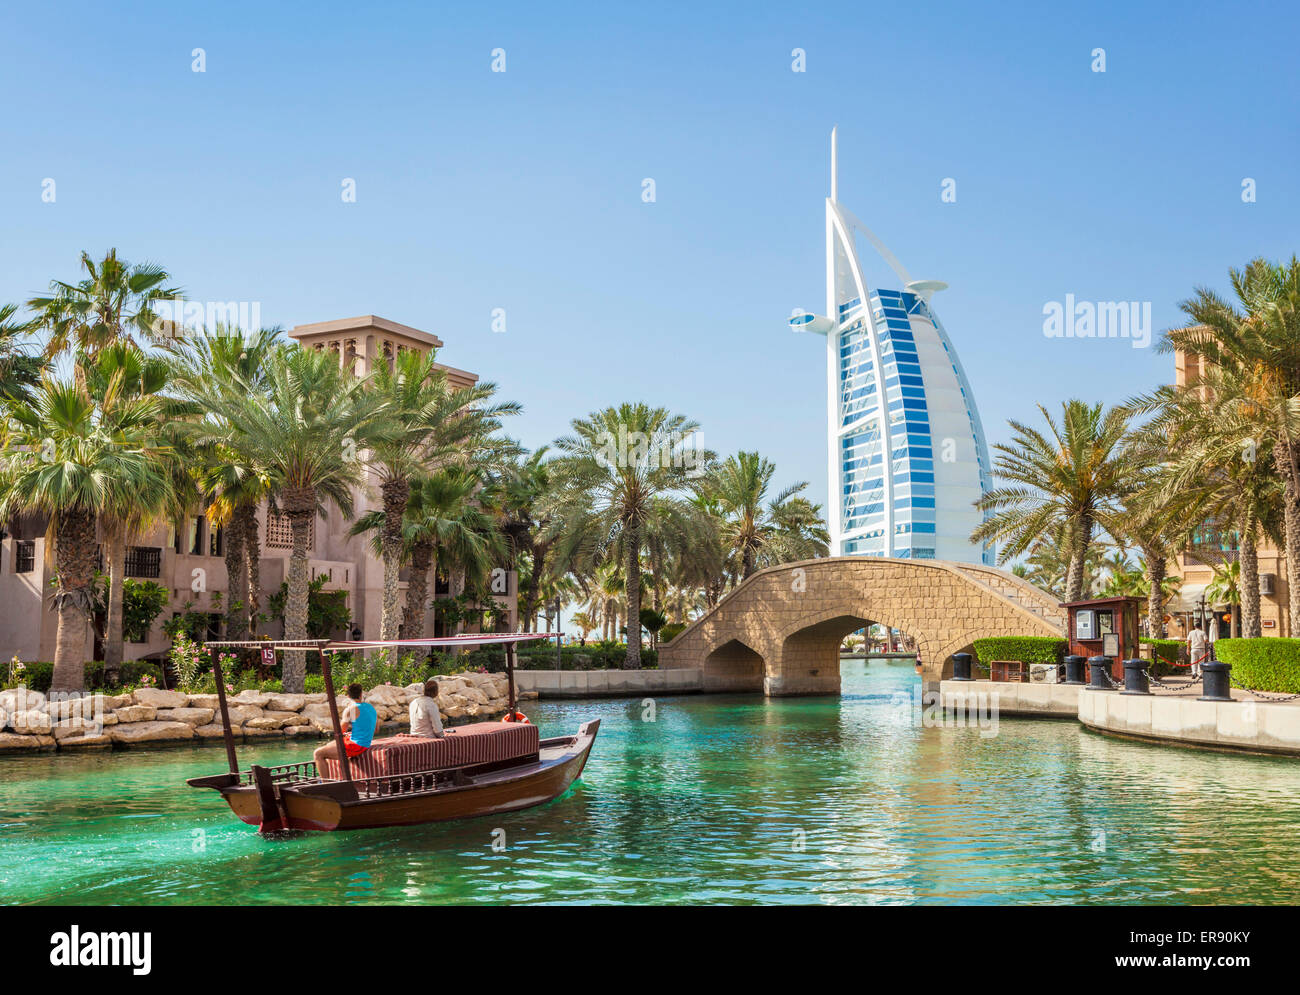 Dubaï Burj al Arab Jumeirah Resort arabe de Dubaï, Émirats arabes unis, ÉMIRATS ARABES UNIS Banque D'Images